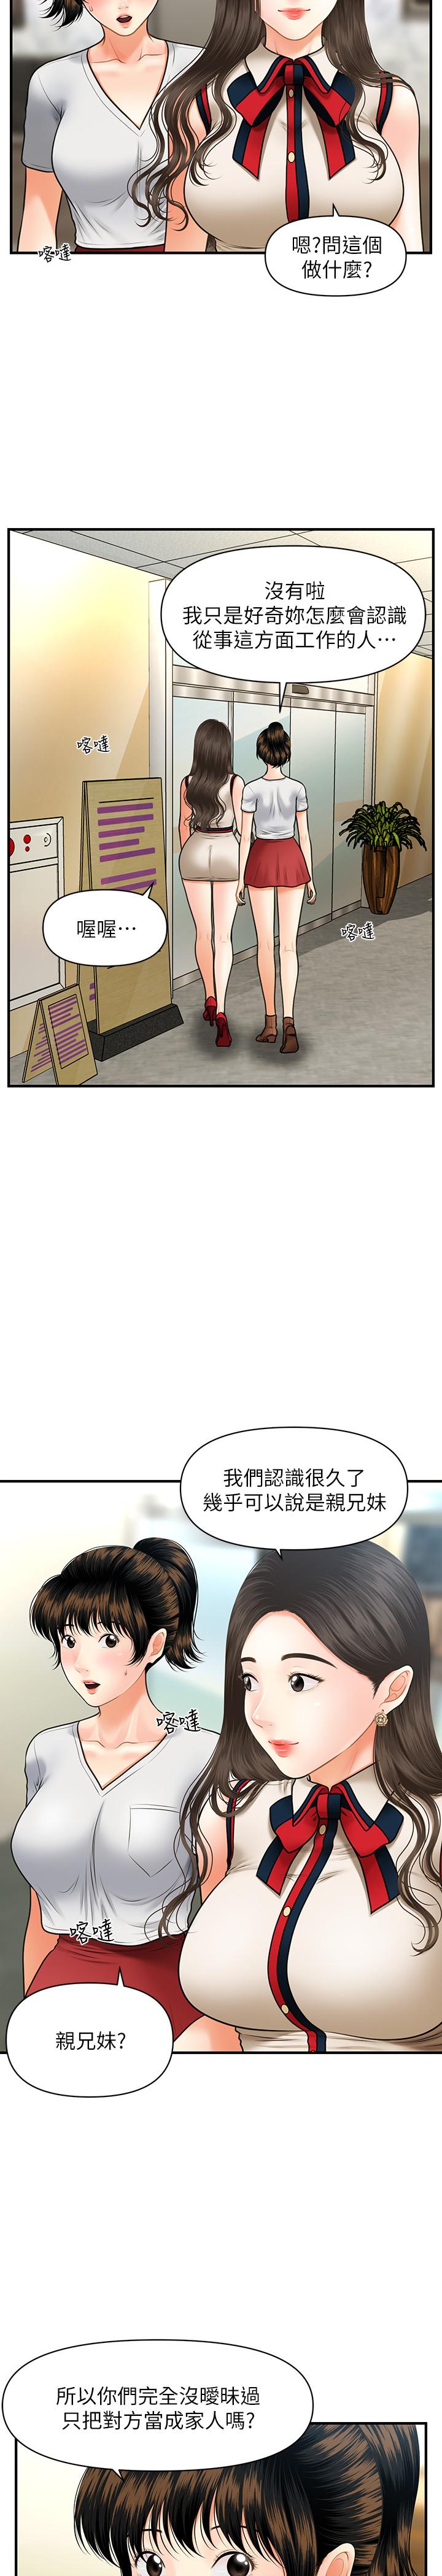 《医美奇鸡》漫画 第10话 - 主动求欢的婕妤